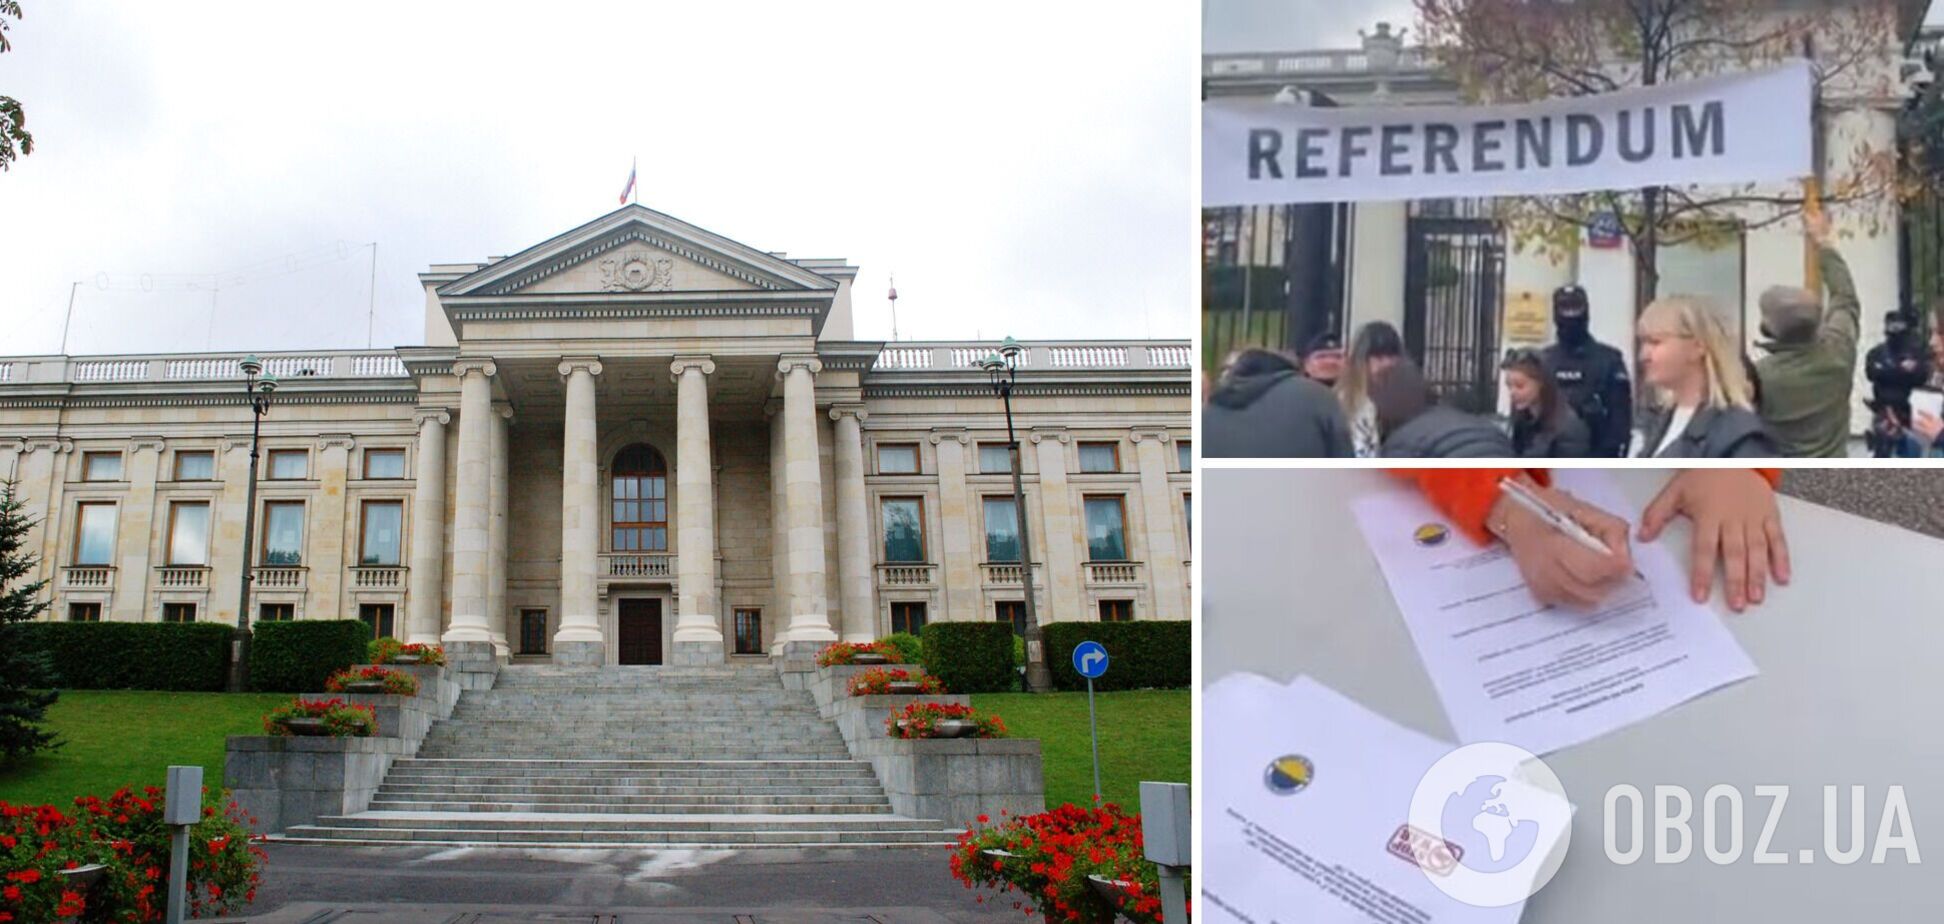 У Варшаві пройшов 'референдум' за передання у власність міста будівлі посольства РФ